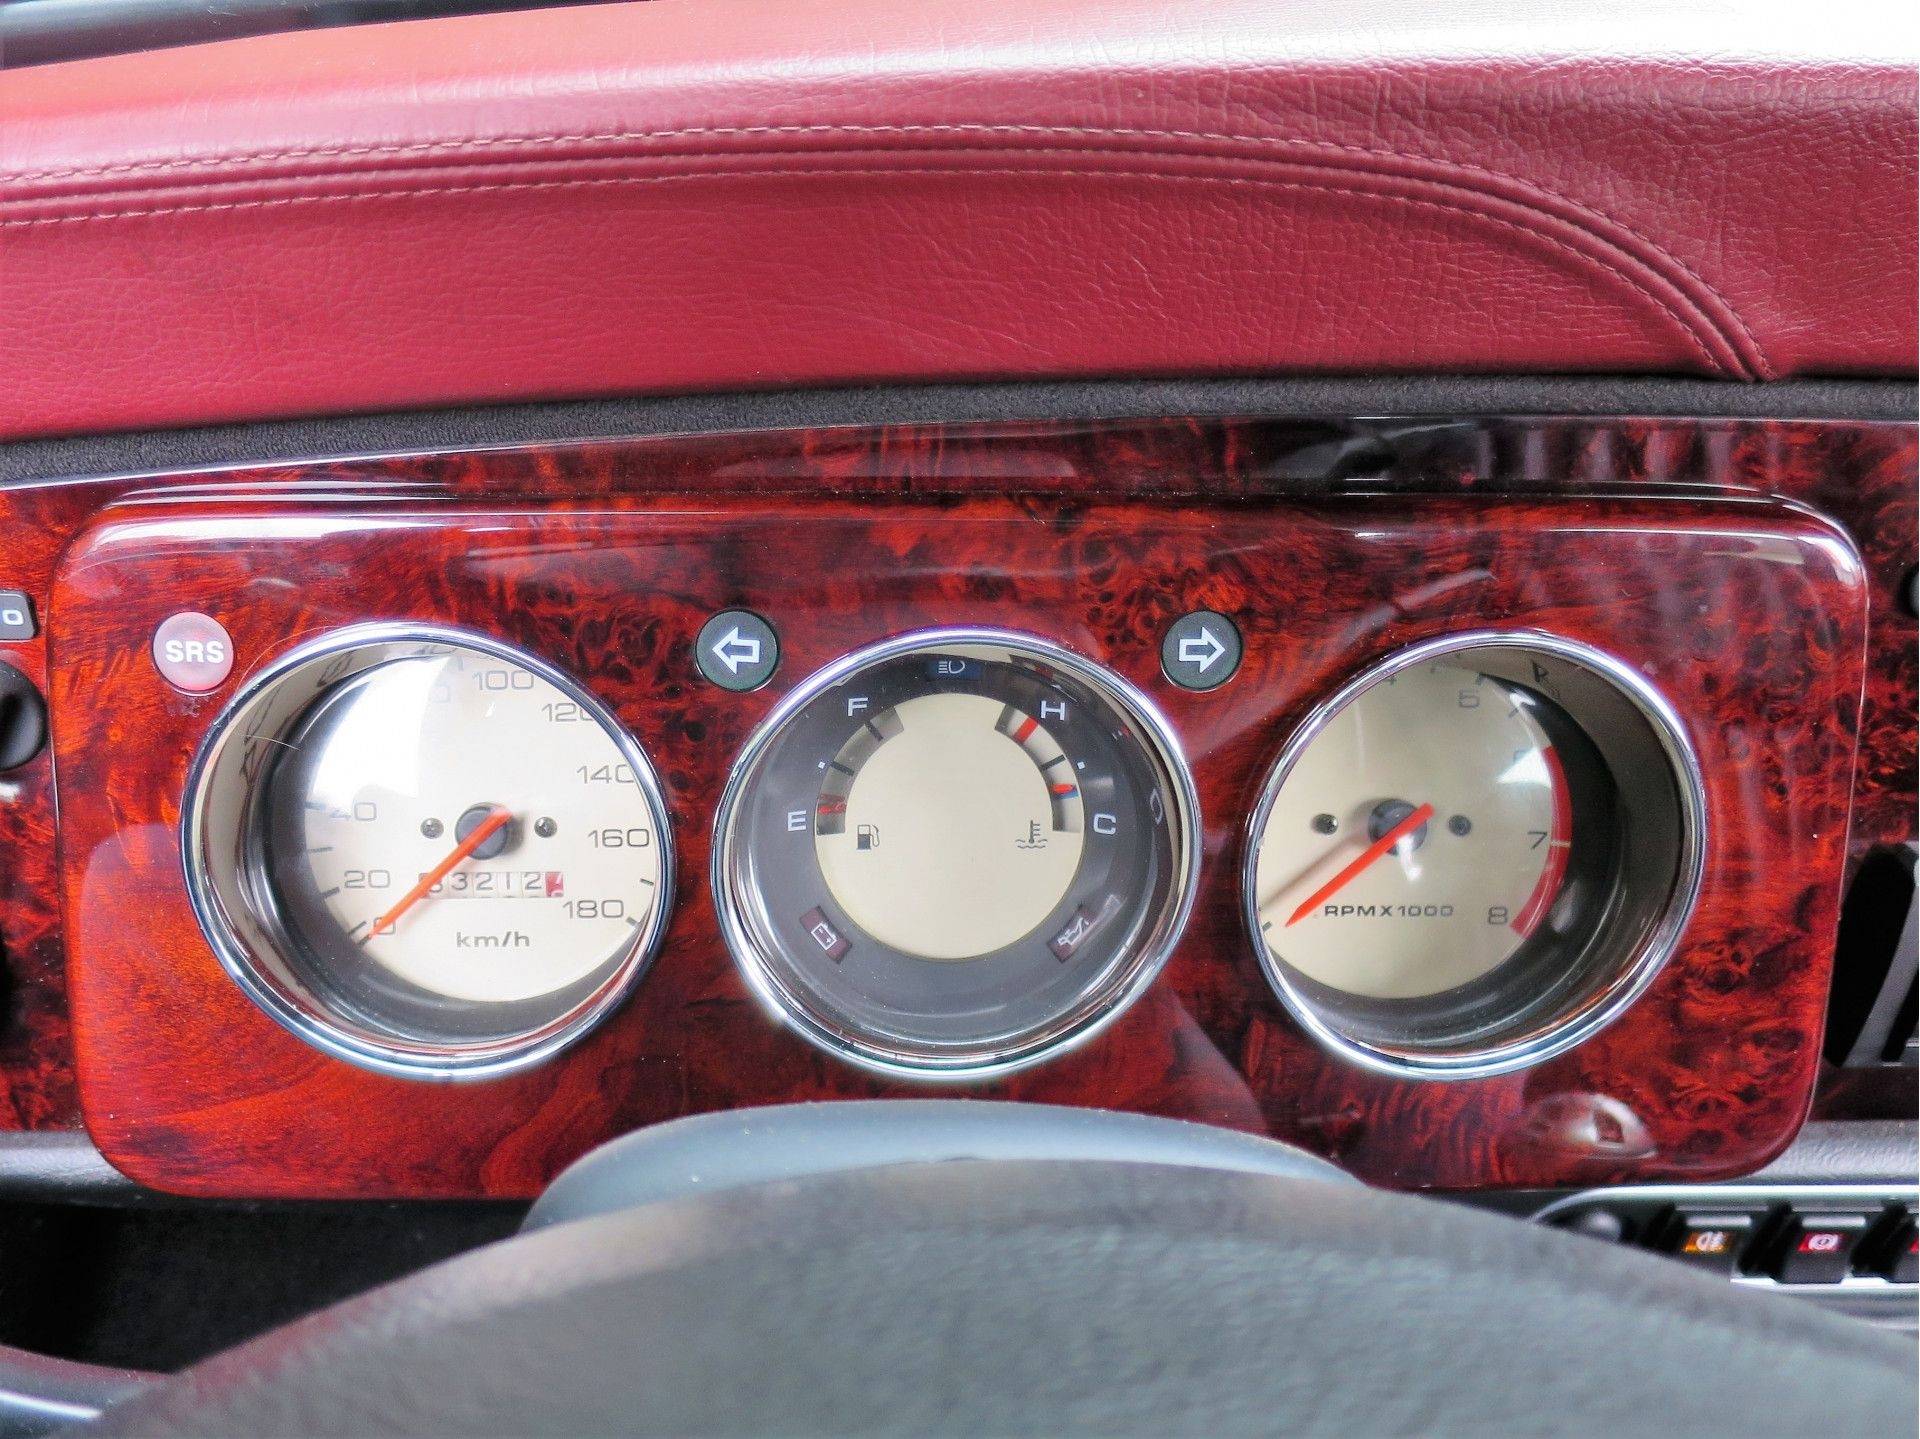 MINI Cooper Sport 1.3 MPI met leder interieur, houten dash en 13" velgen - 16/50